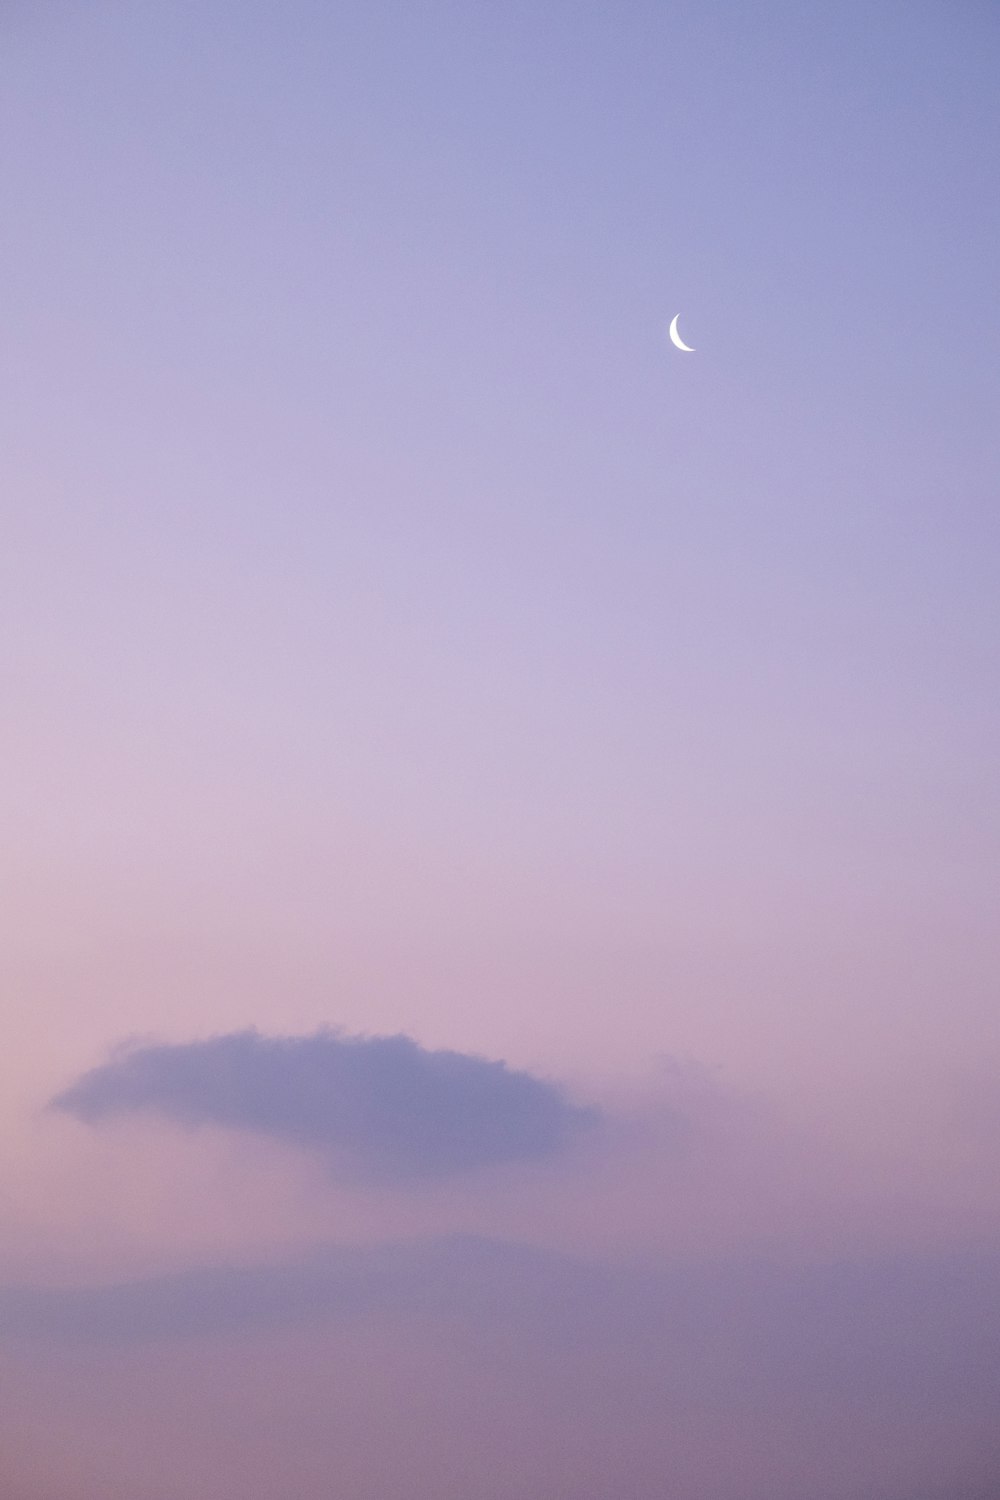 Un nuage dans le ciel avec une demi-lune au loin